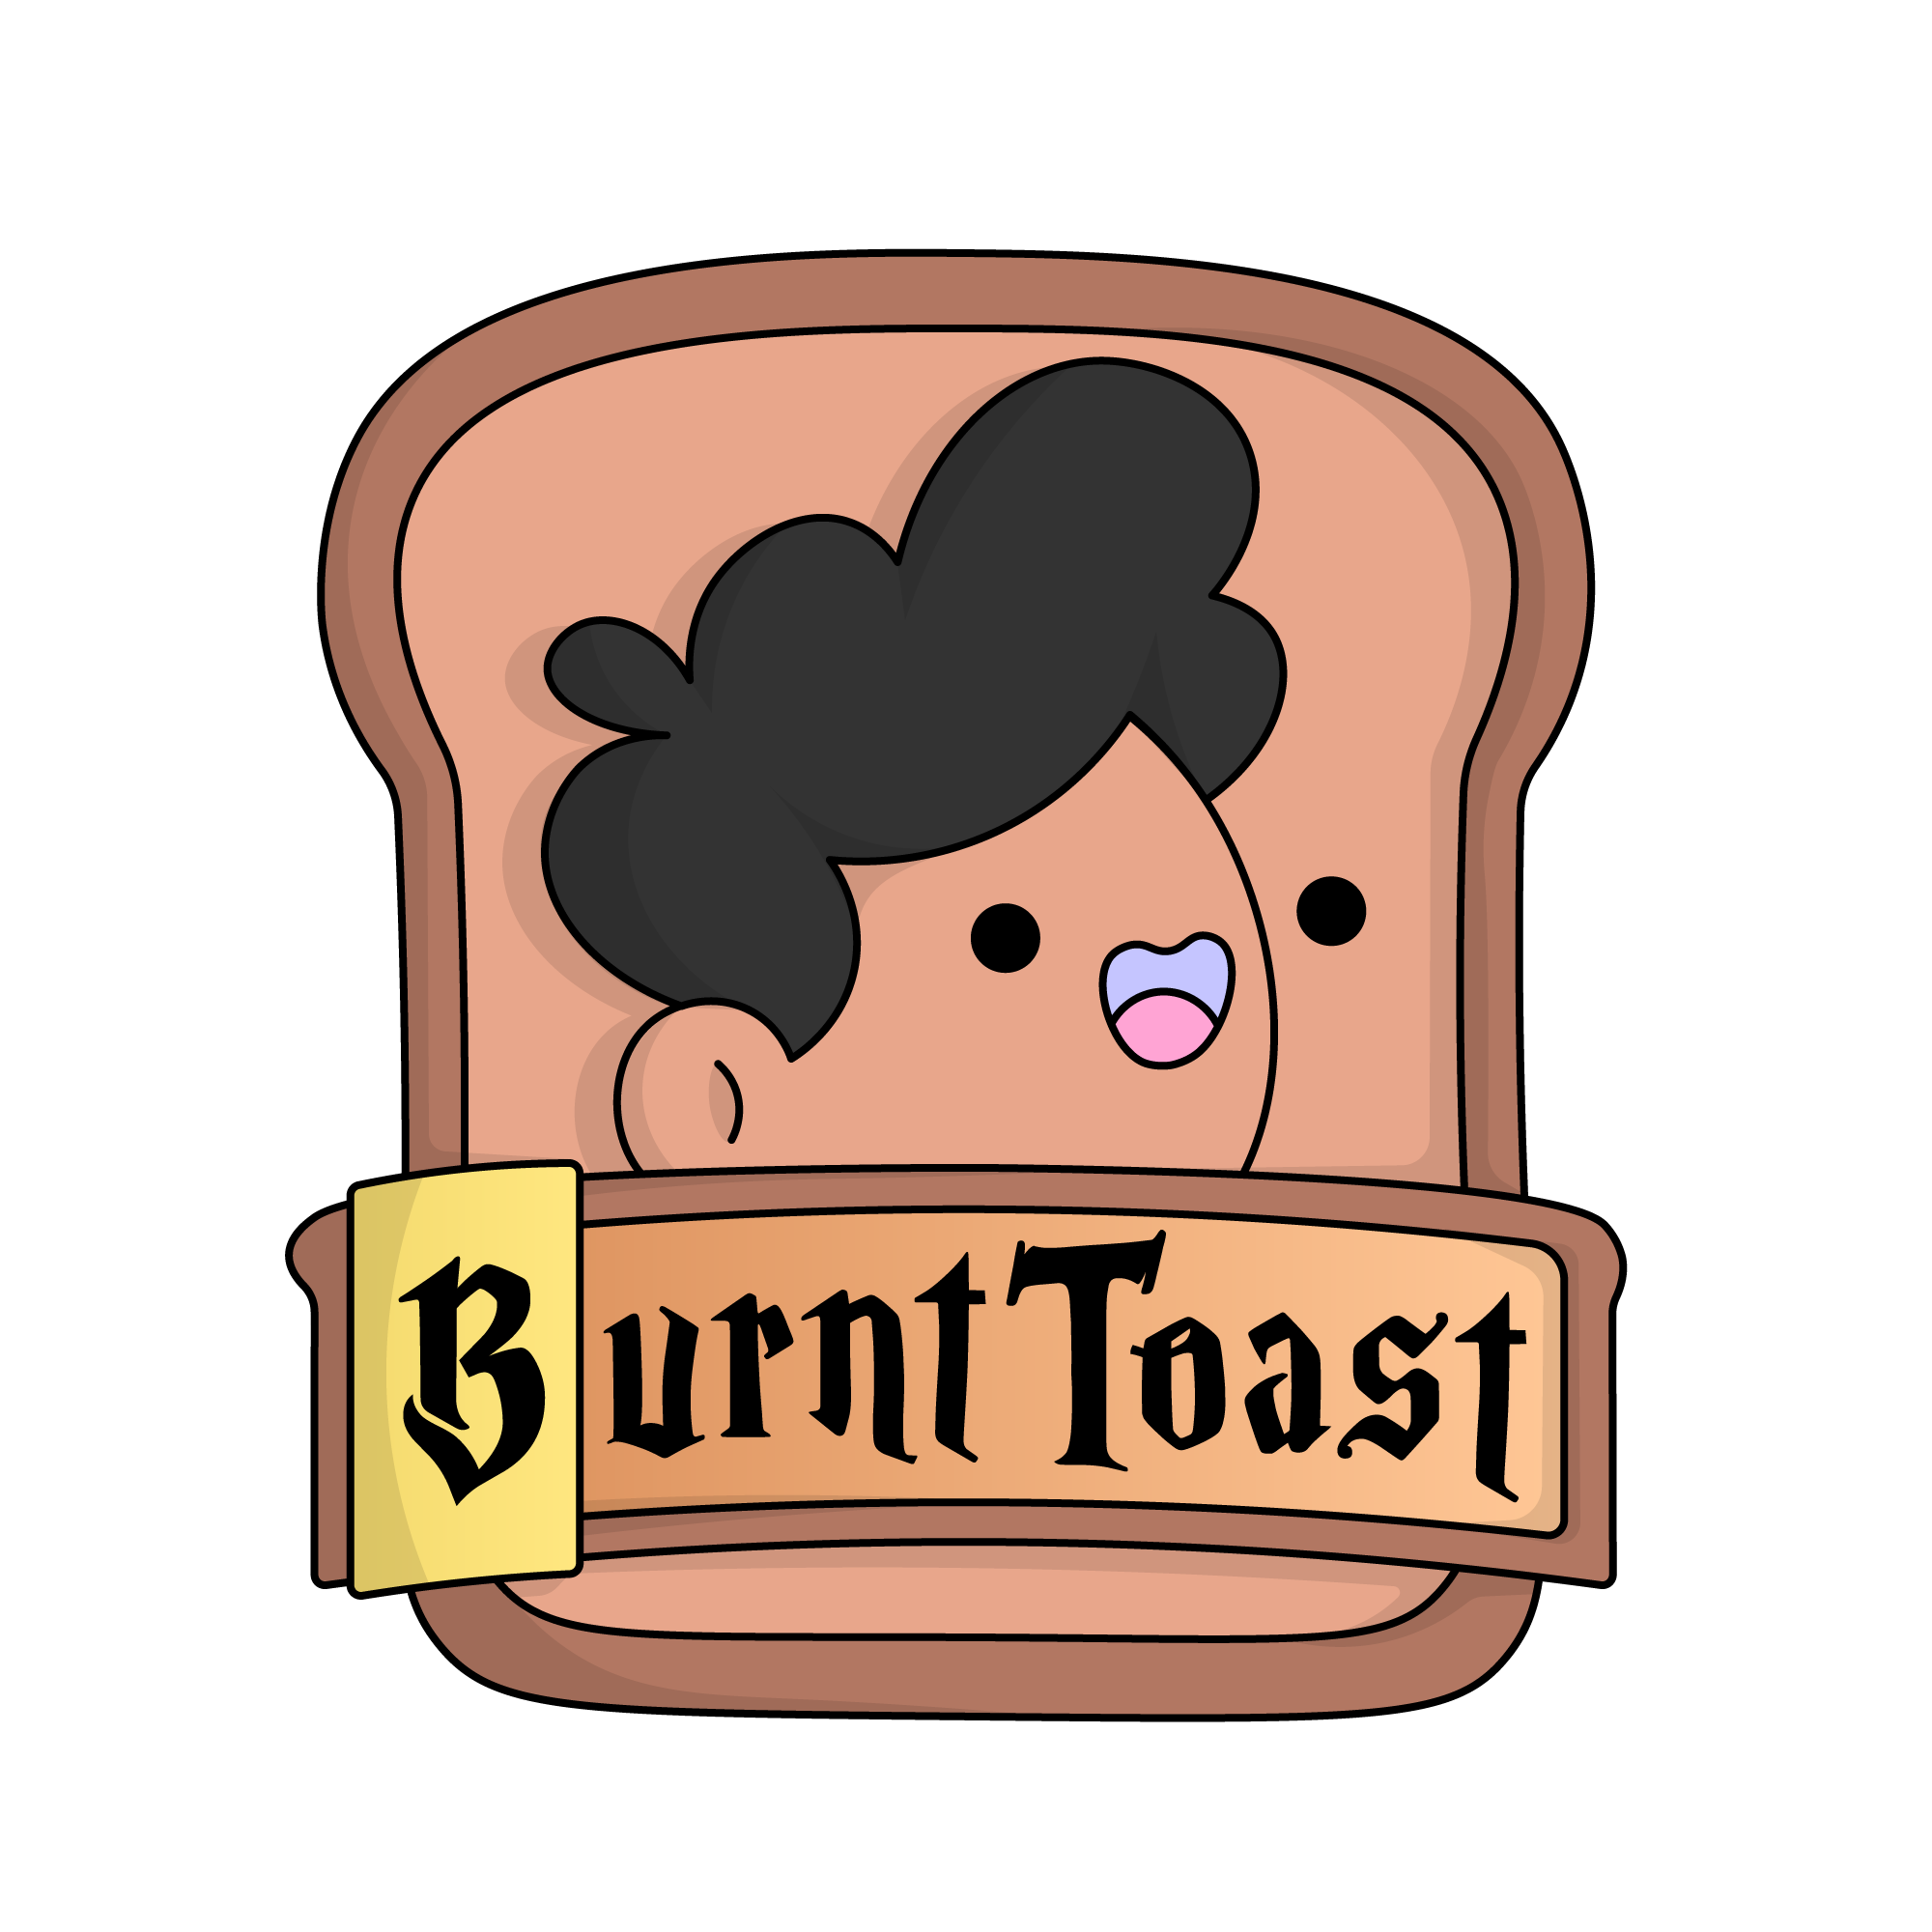 House BurntToast